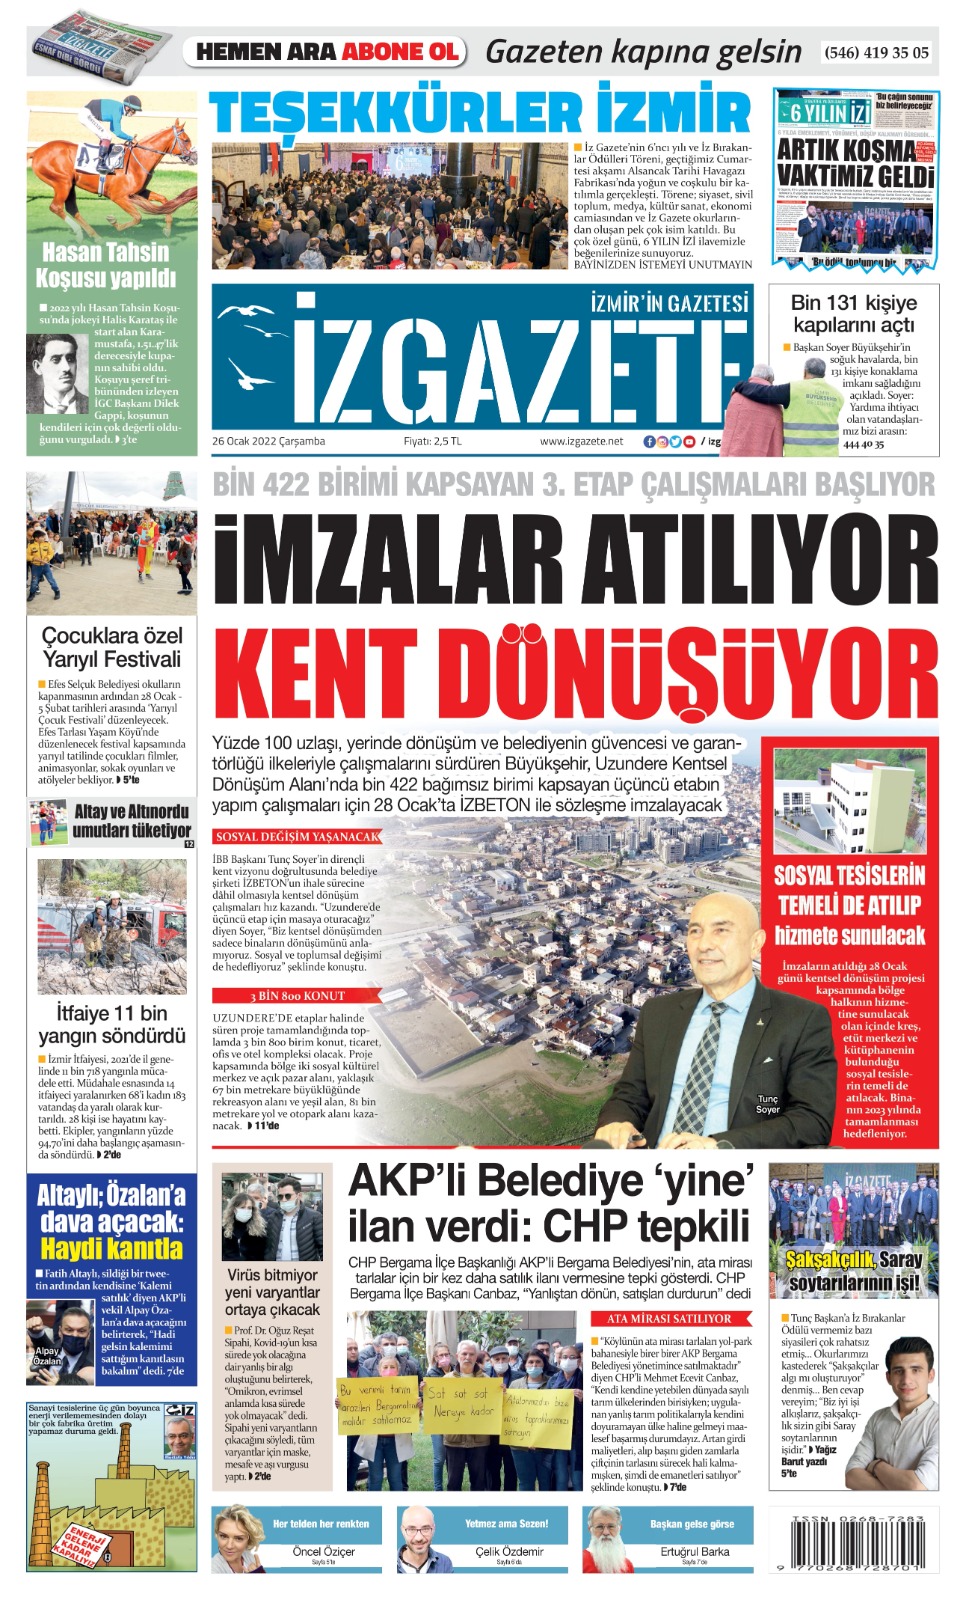 İz Gazete - İzmir'in Gazetesi - 26.01.2022 Manşeti